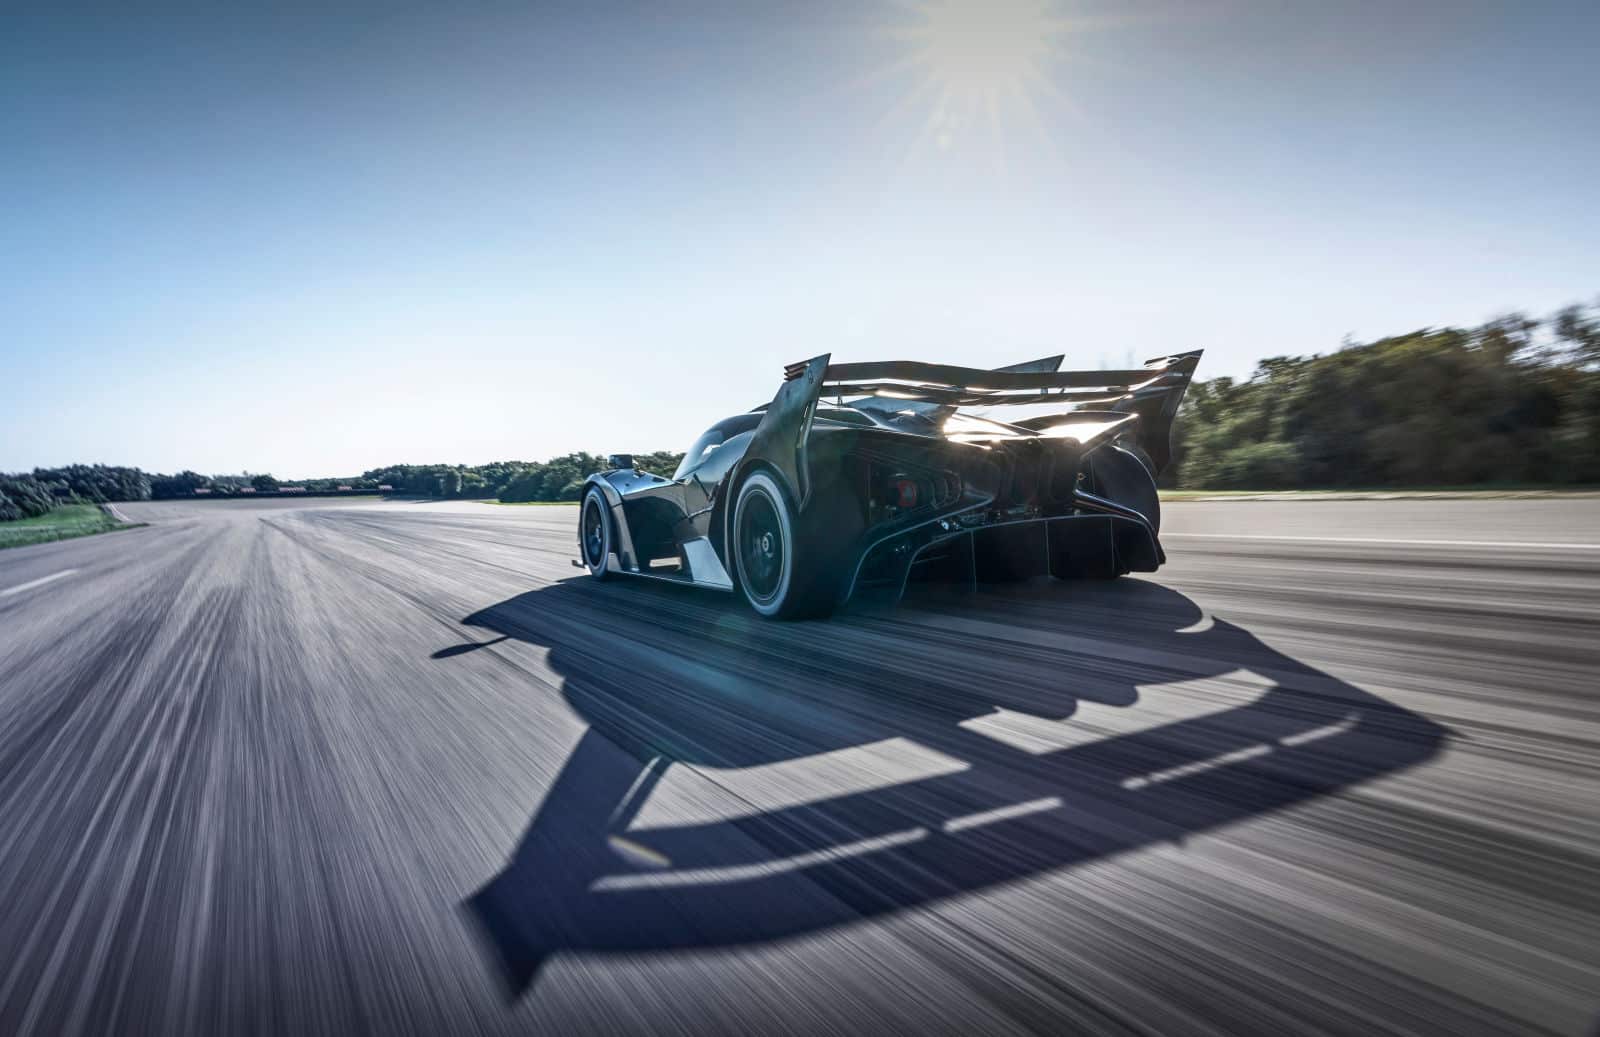 Ein Bugatti Bolide beschleunigt auf einer sonnendurchfluteten Rennstrecke, mit dem Sonnenlicht, das die aerodynamischen Kurven und den kräftigen Abtrieb des Fahrzeugs hervorhebt.